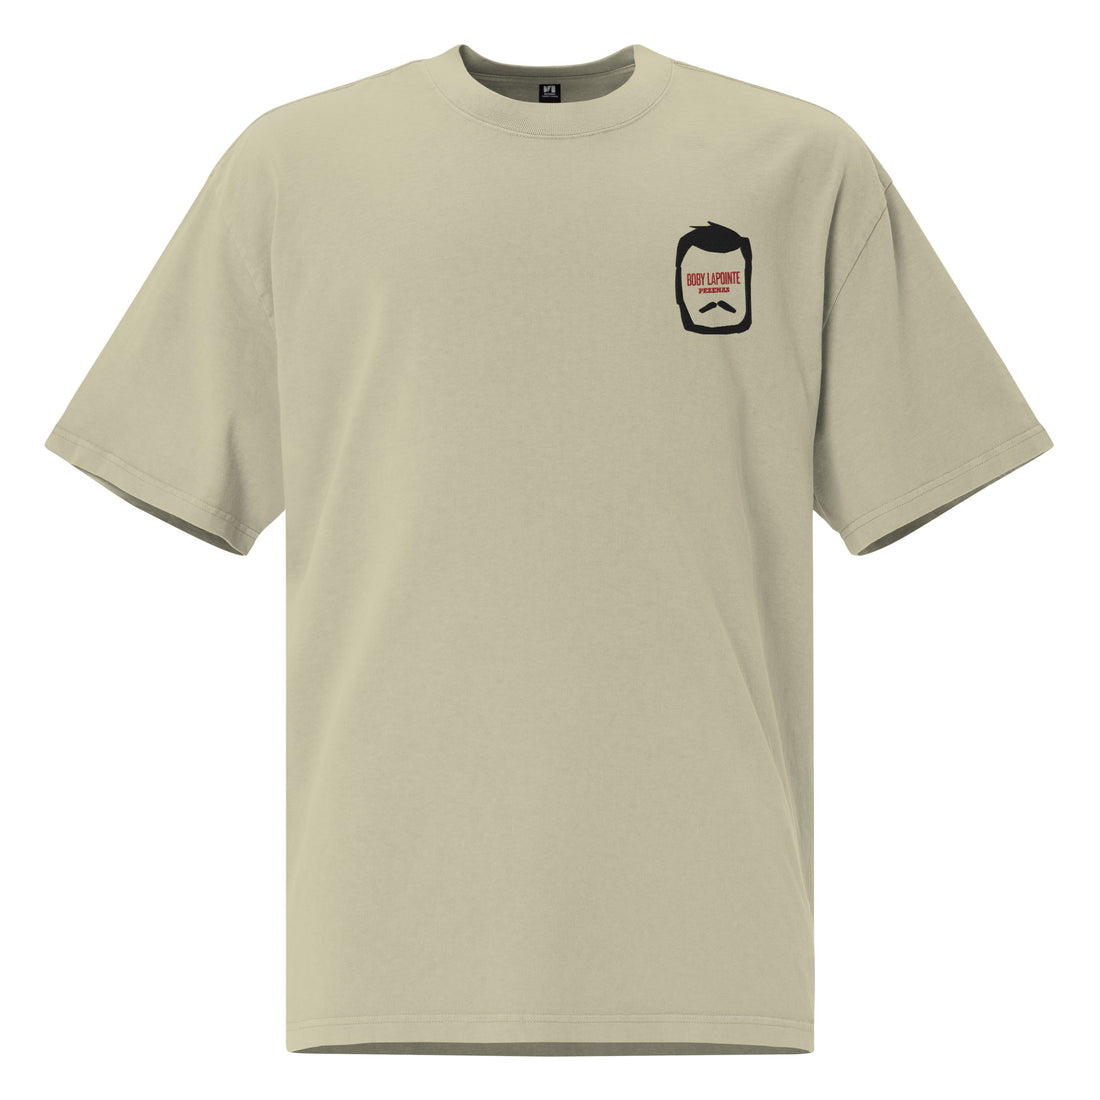 Boby Lapointe - Tête Bara - T-shirt oversize délavé - Brodé